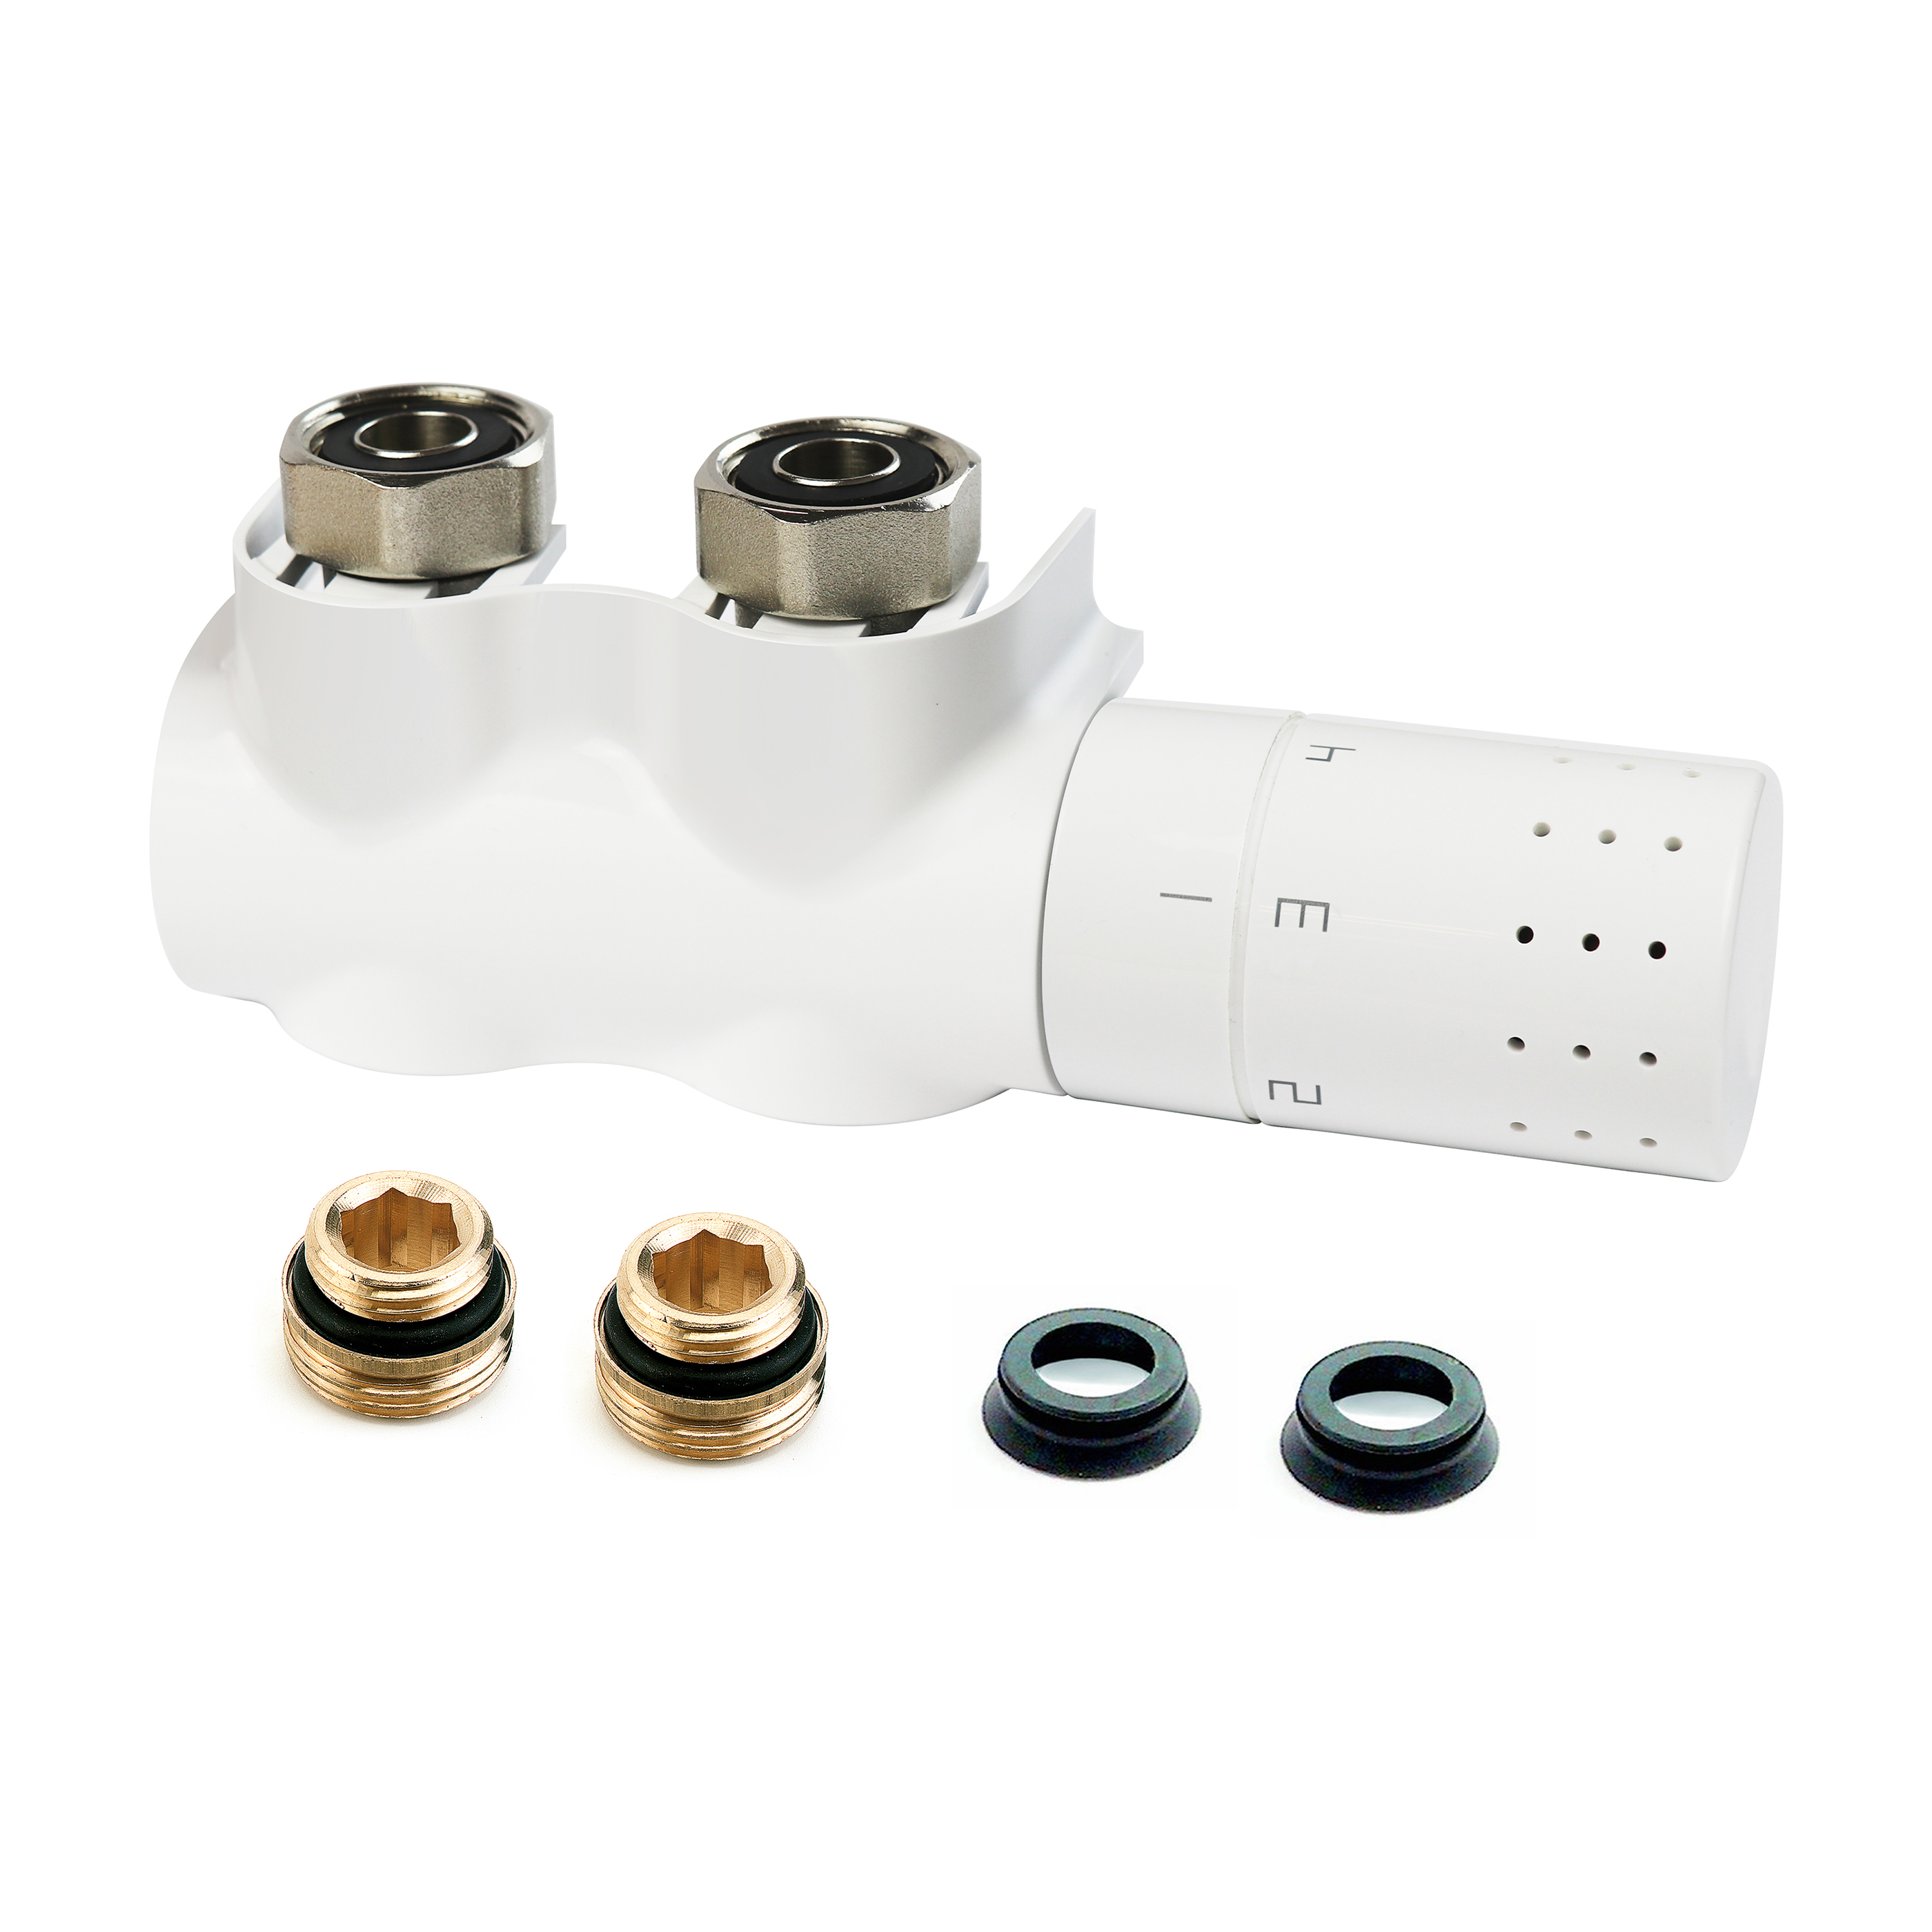 L234017001 Samorównoważący zestaw termostatyczny Autosar Thermod Design, M30, biały